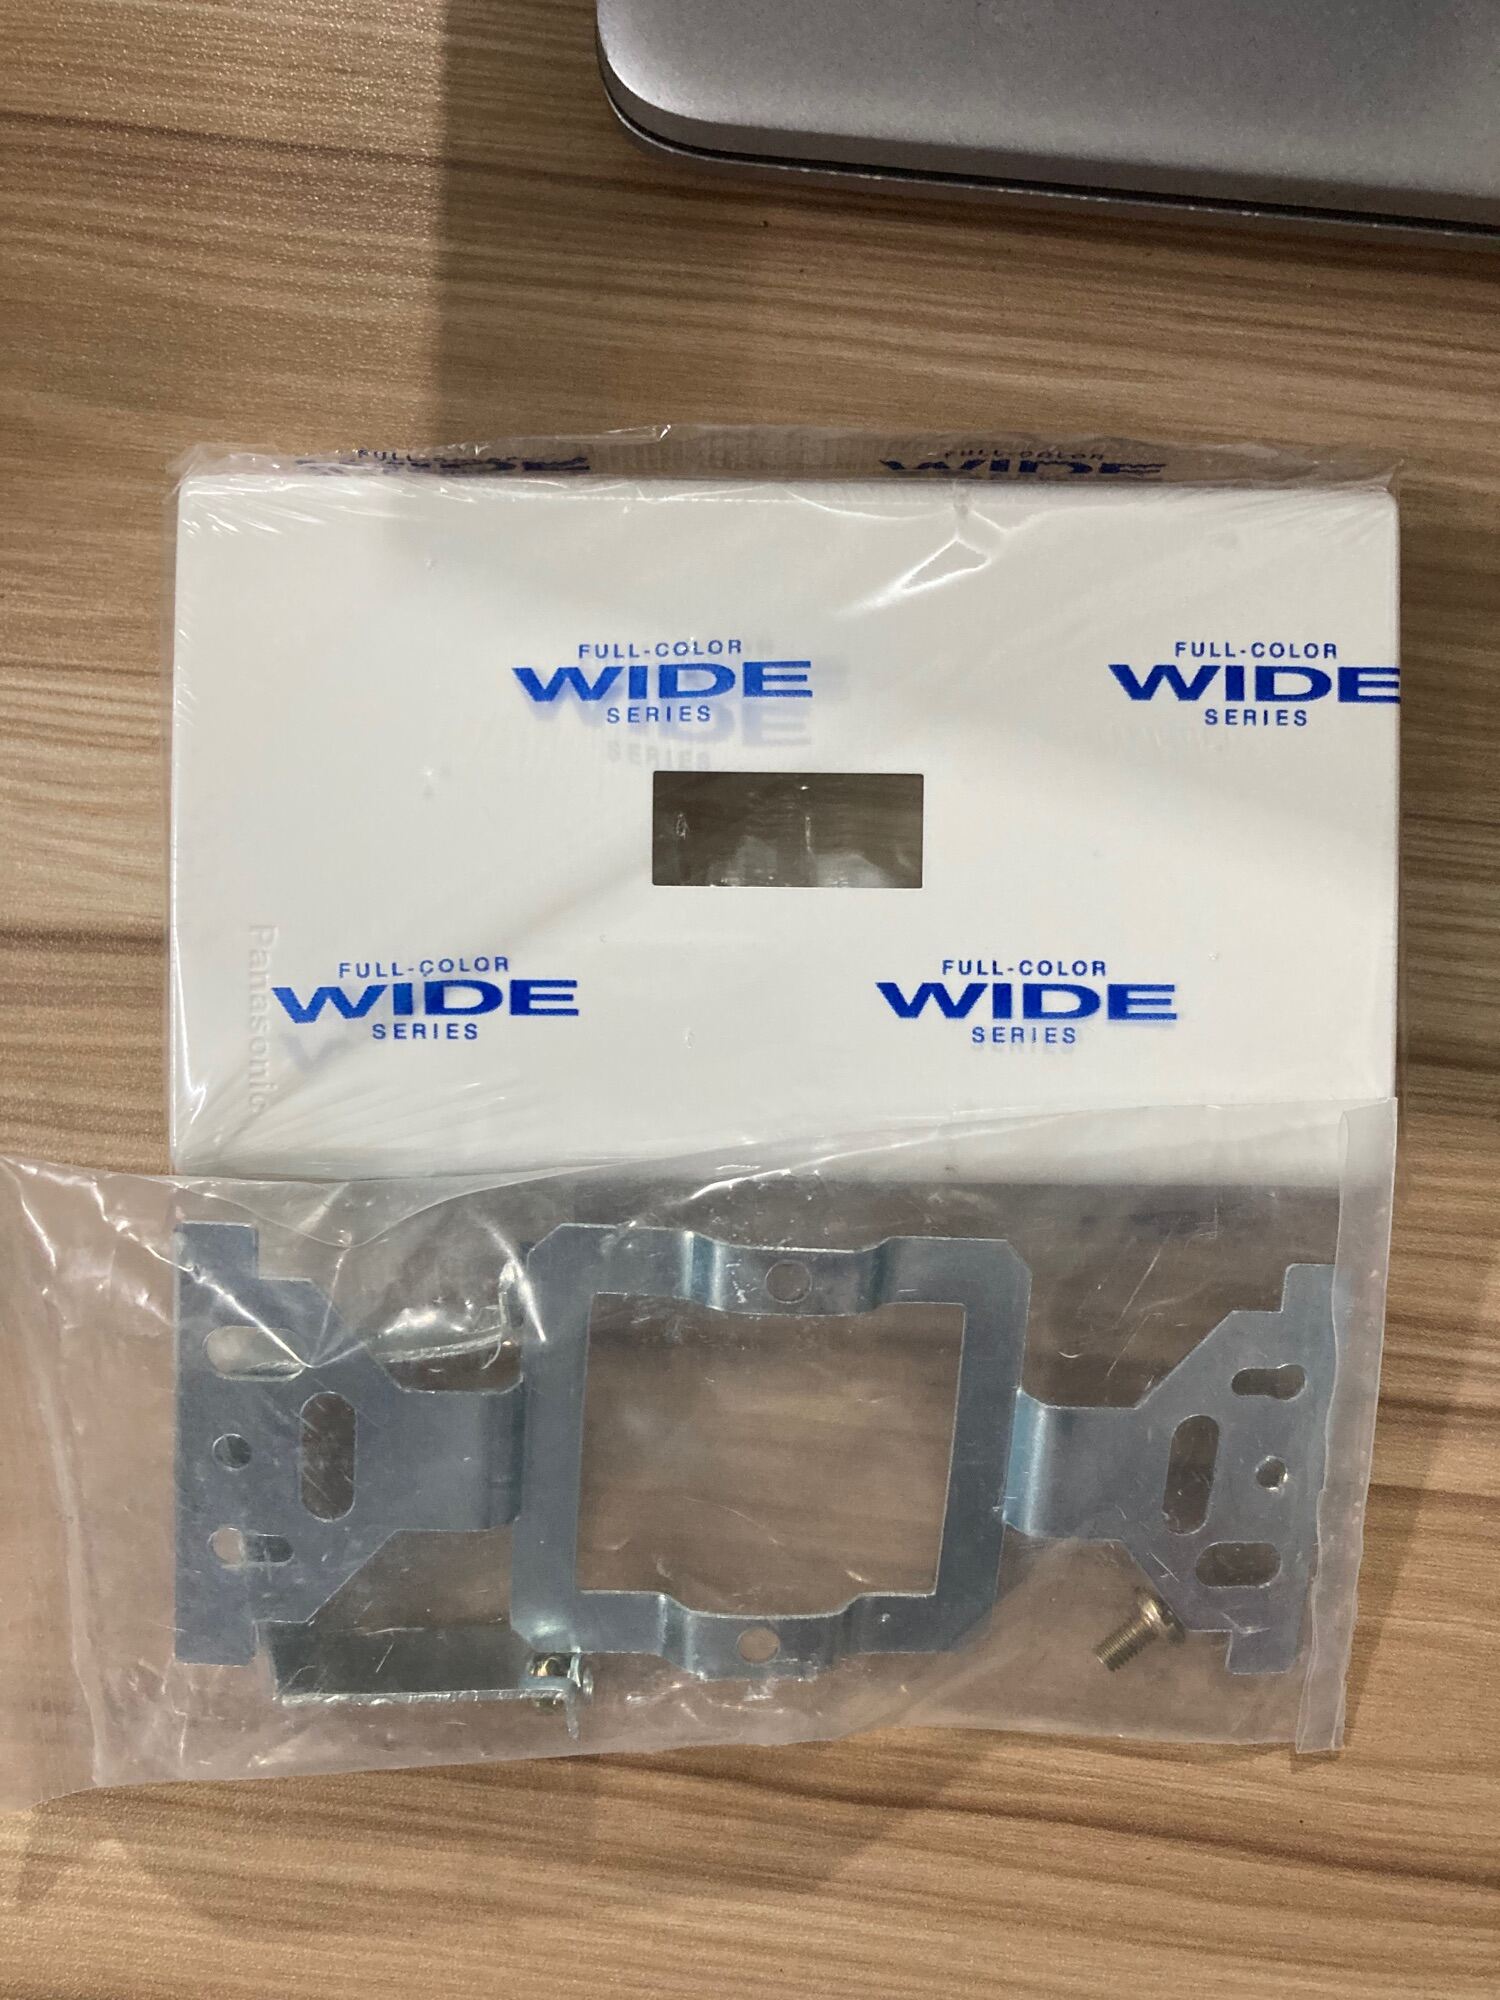 PANASONIC - Công tắc WIDE ổ cắm mặt 12346 thiết bị panasonic dòng WIDE PANASONIC chính hãng